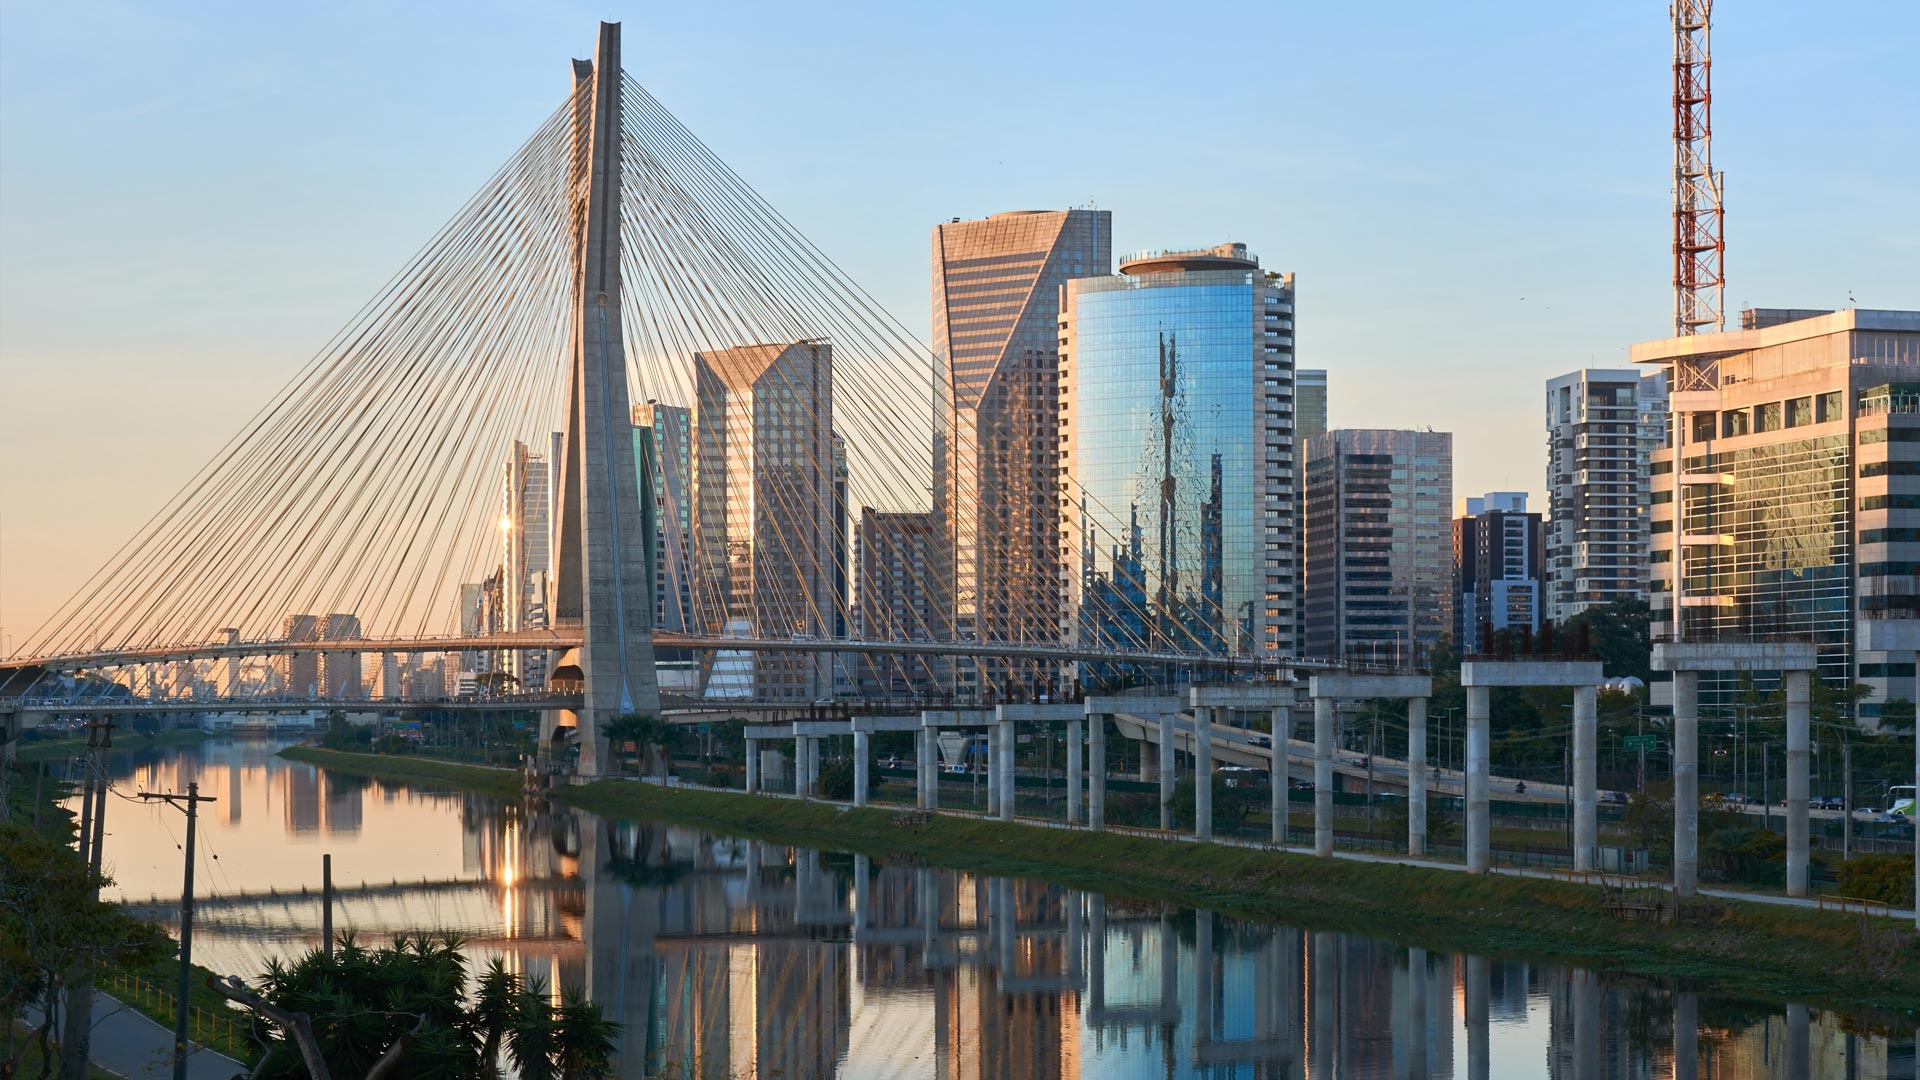 An image of a bridge in Sao Paulo Brazil